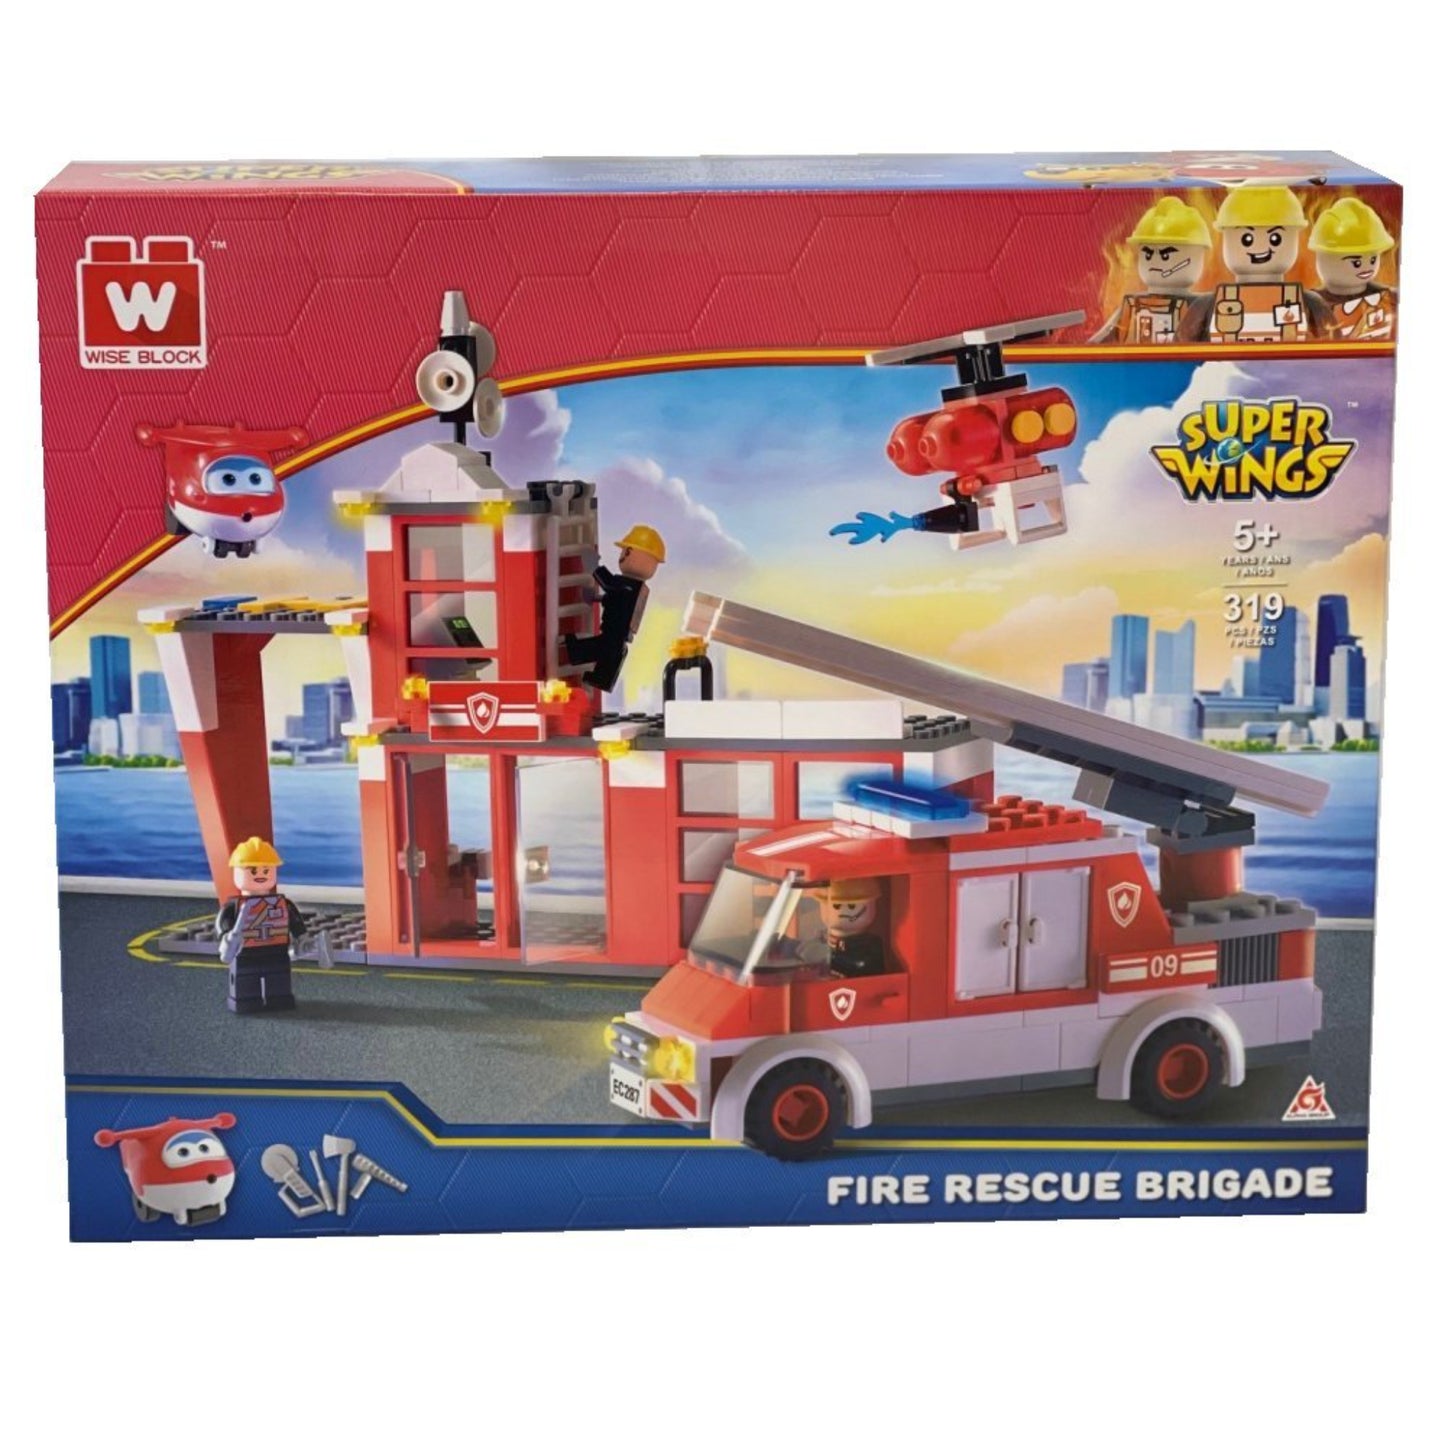 Super Wings Fire Rescue Brigade